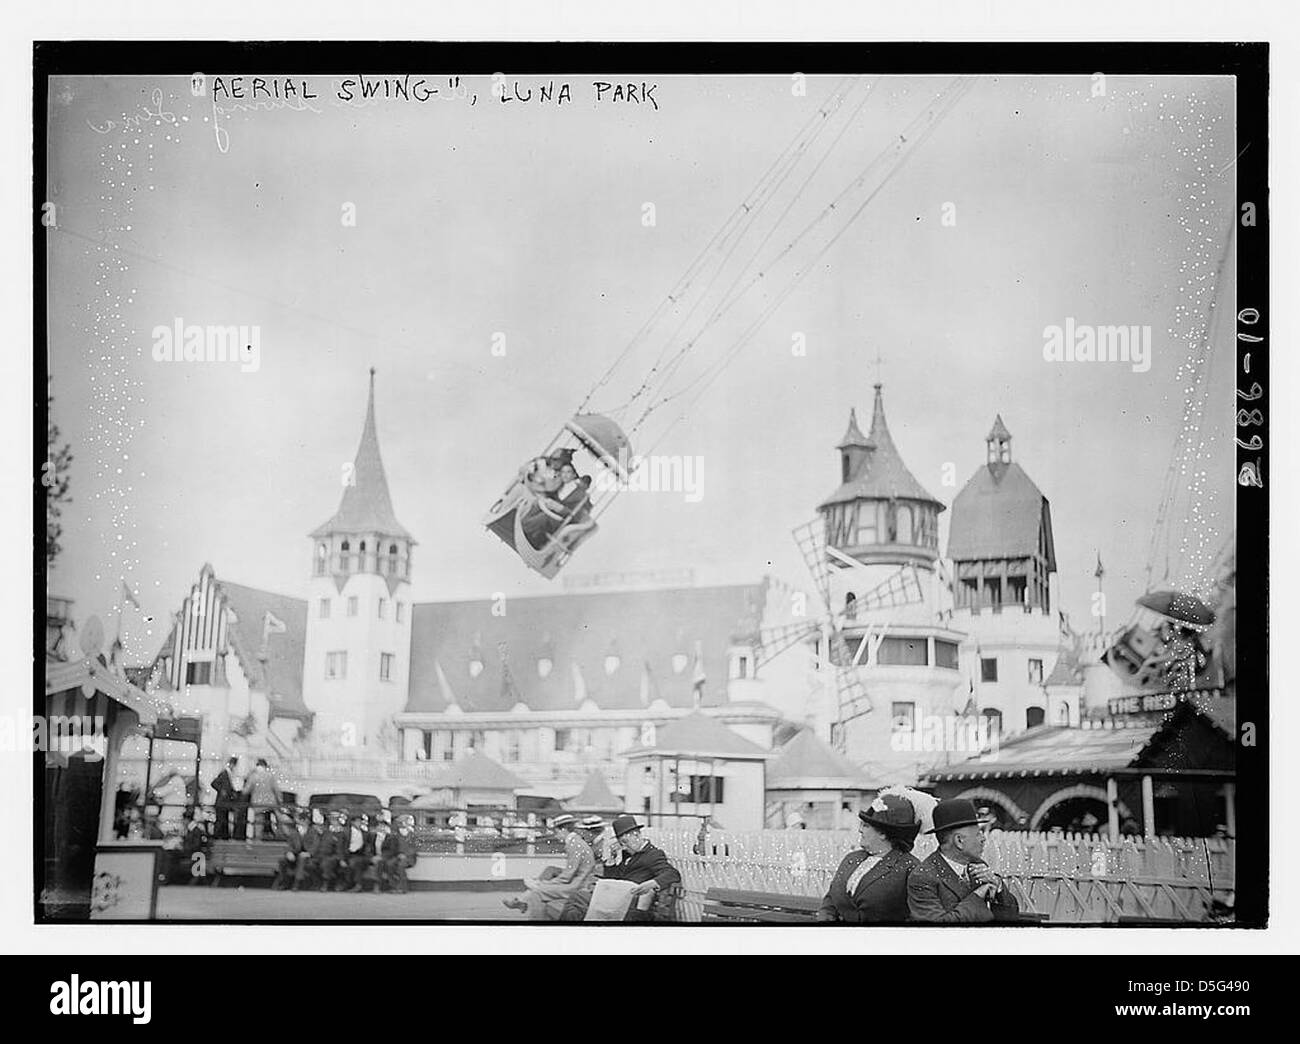 Aerial Swing Luna Park (LOC) Stock Photo